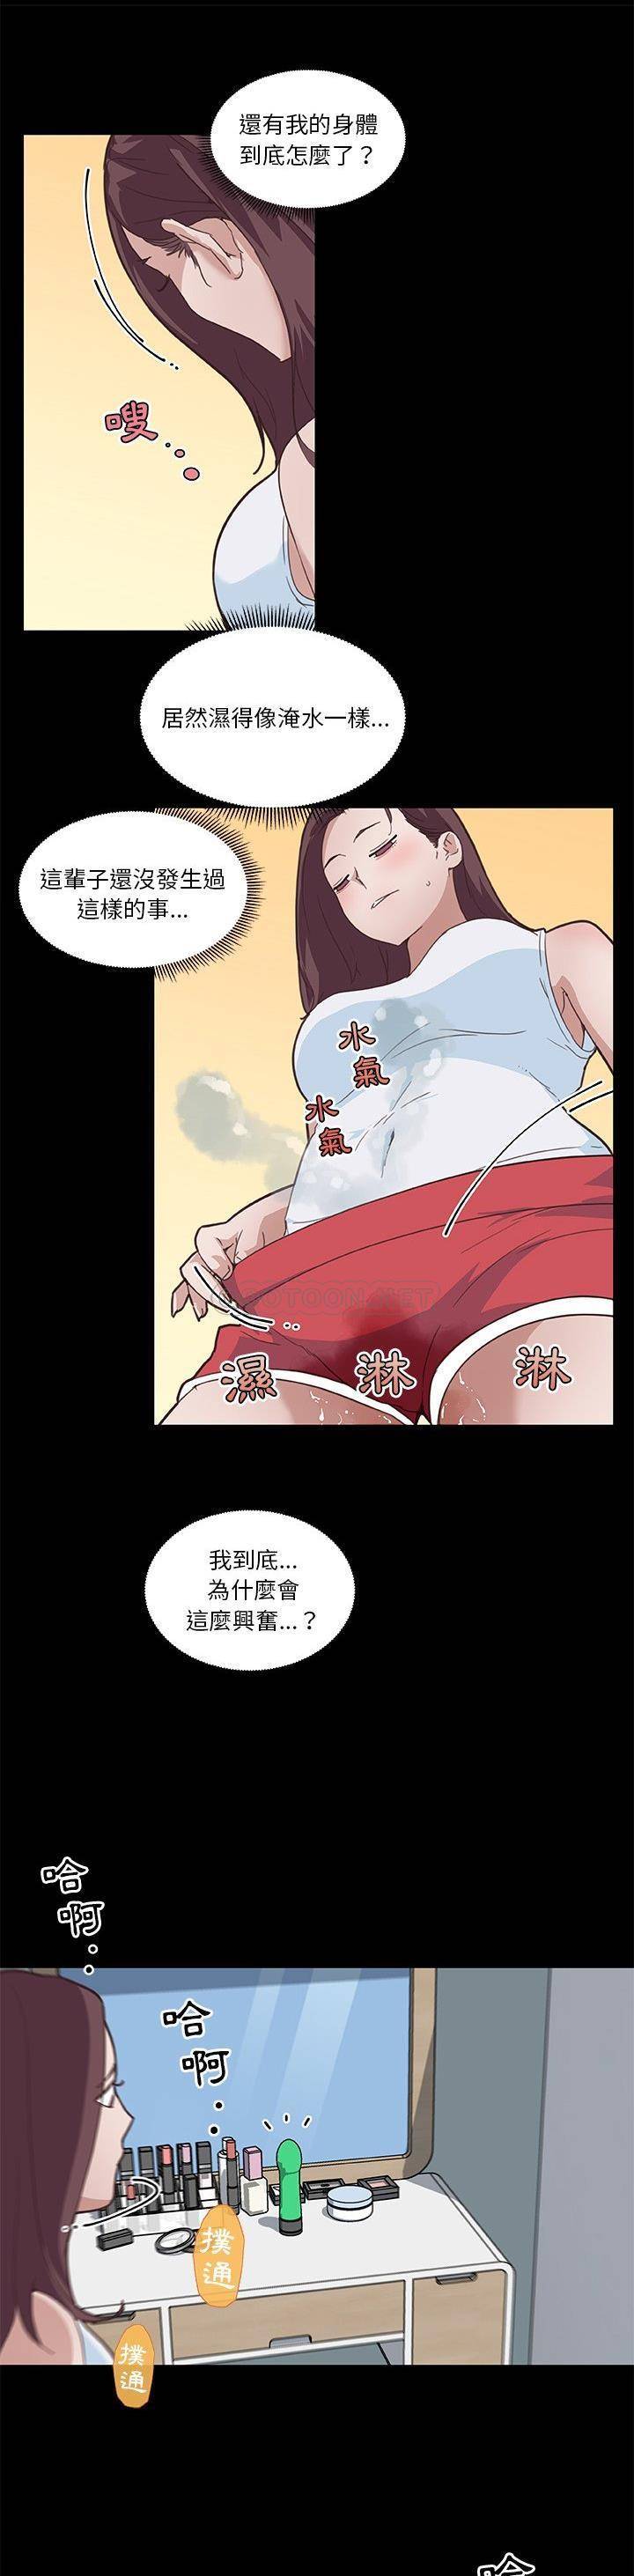 韩国污漫画 神似初戀的她 第17话 20